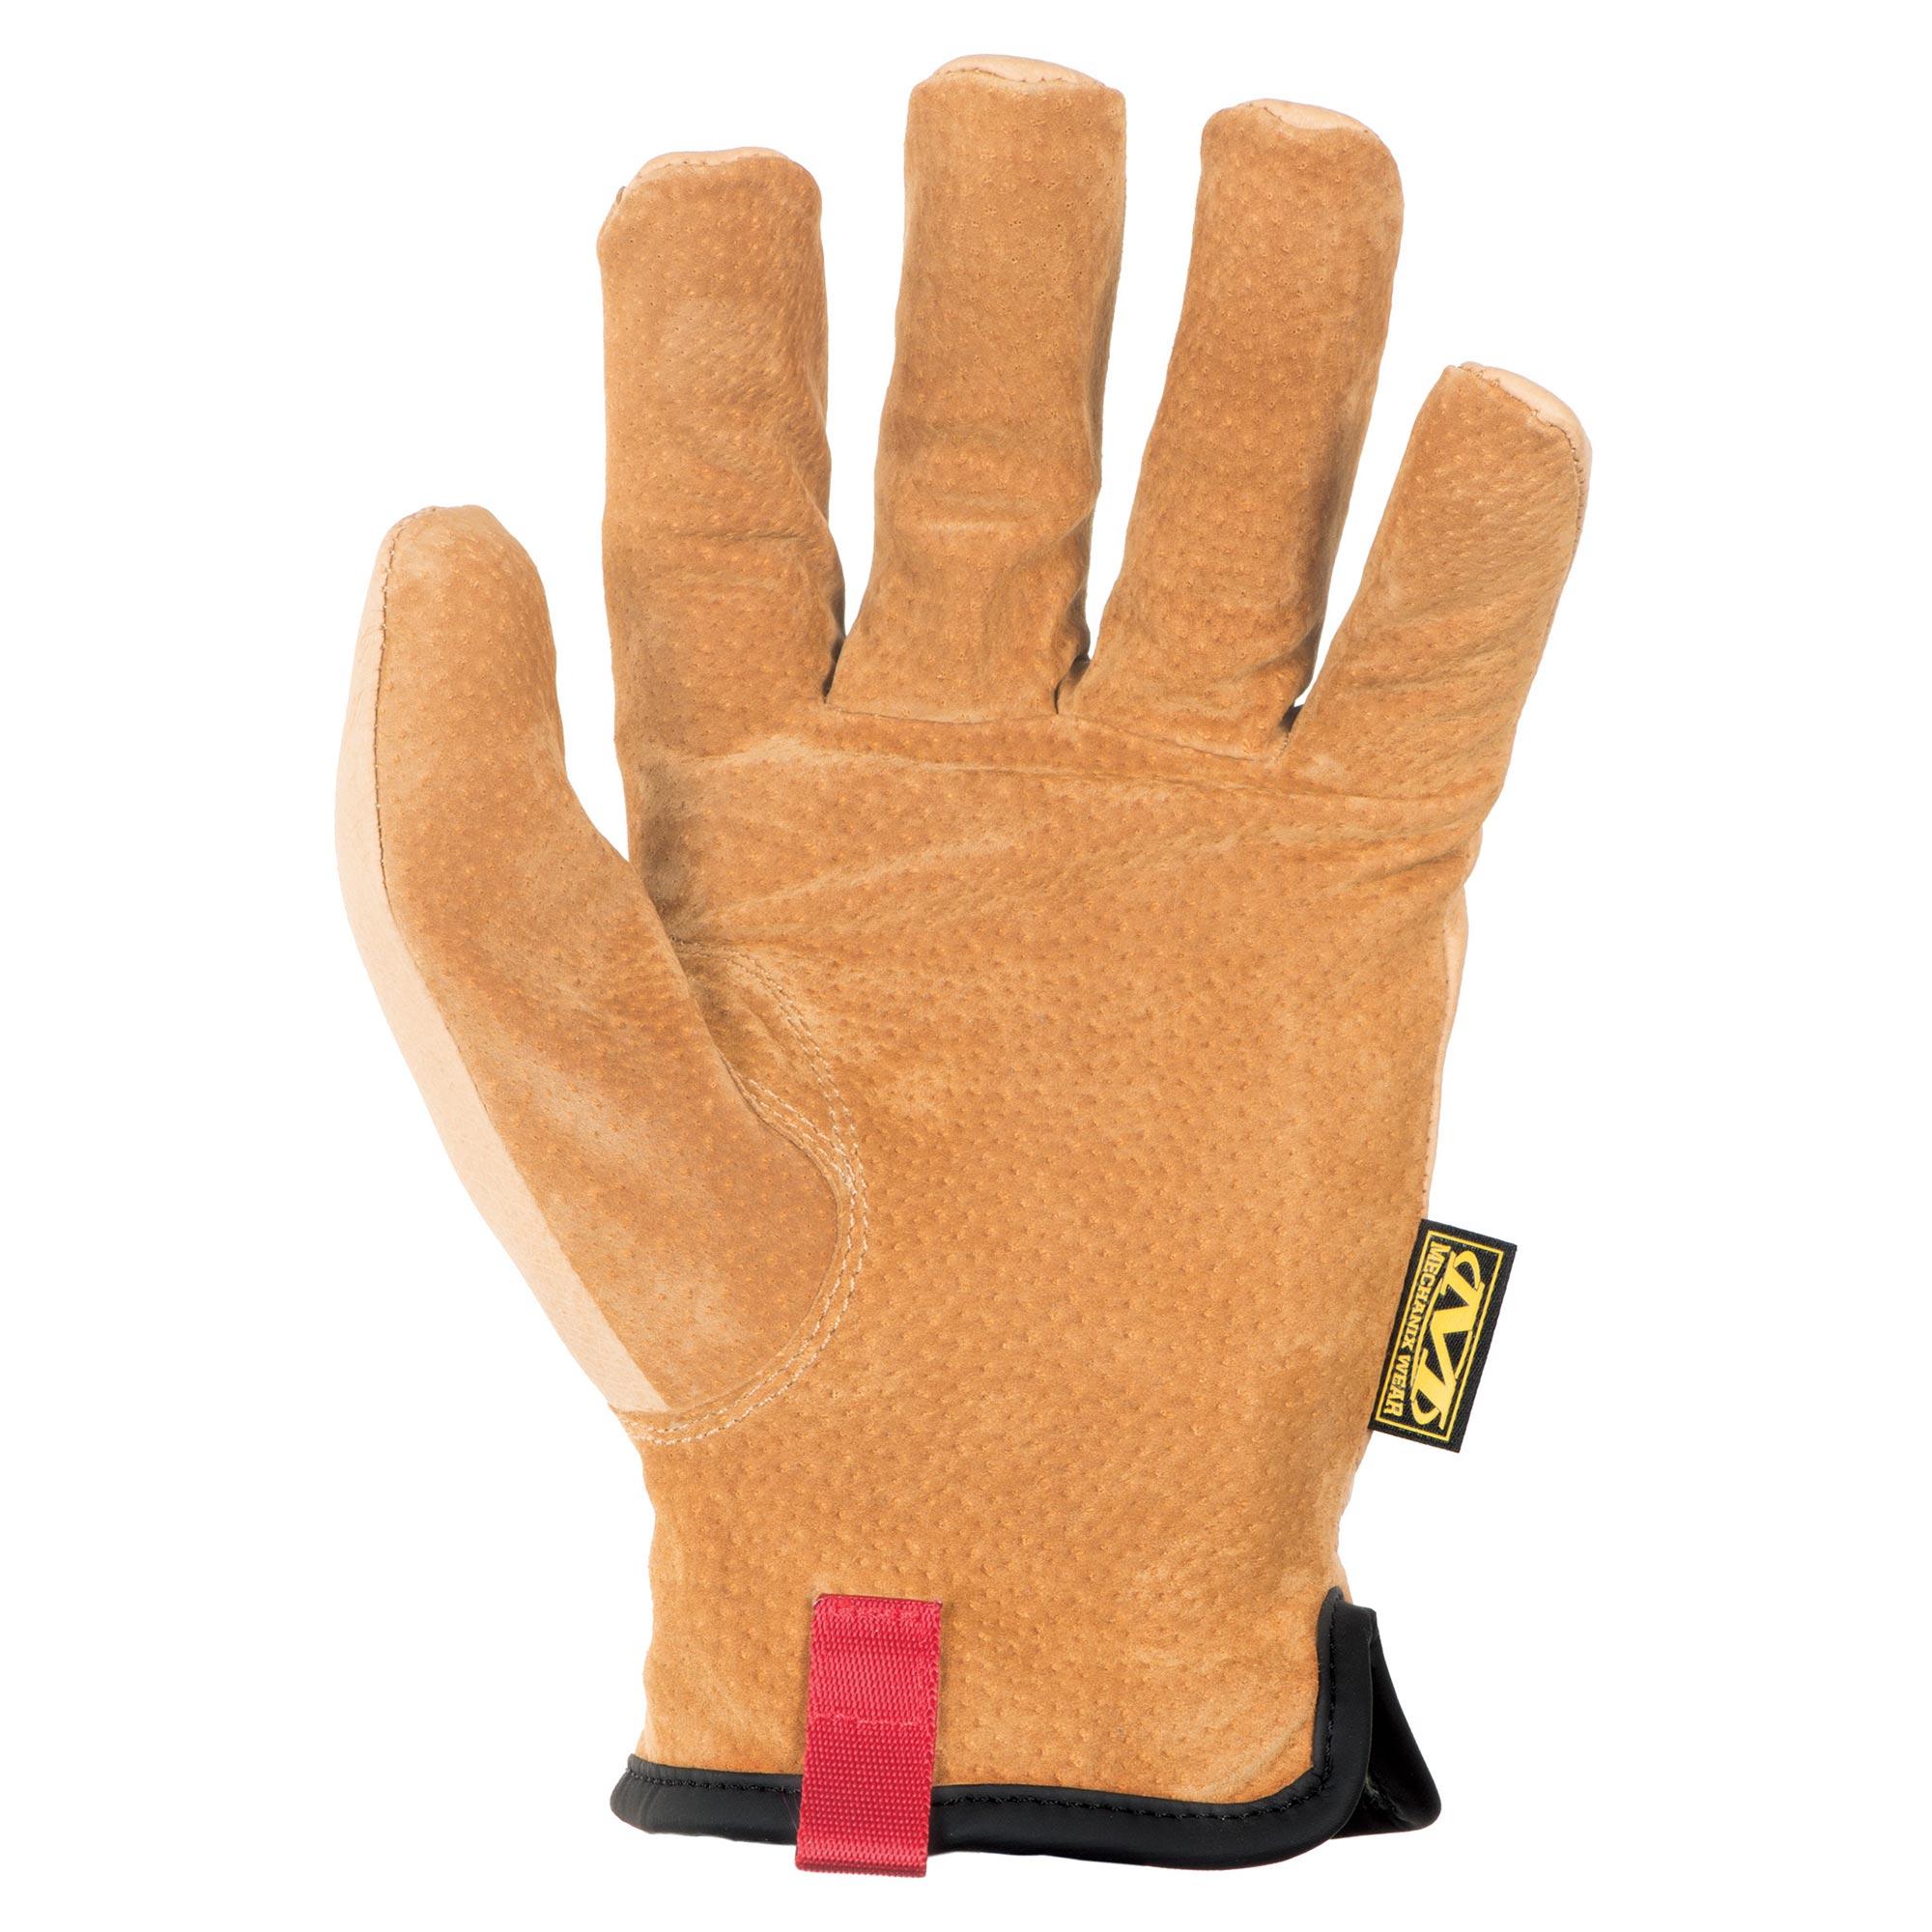 Mechanix Wear Durahide Original LMG-75 Mechanics Work Gloves - Pair -  Western Safety